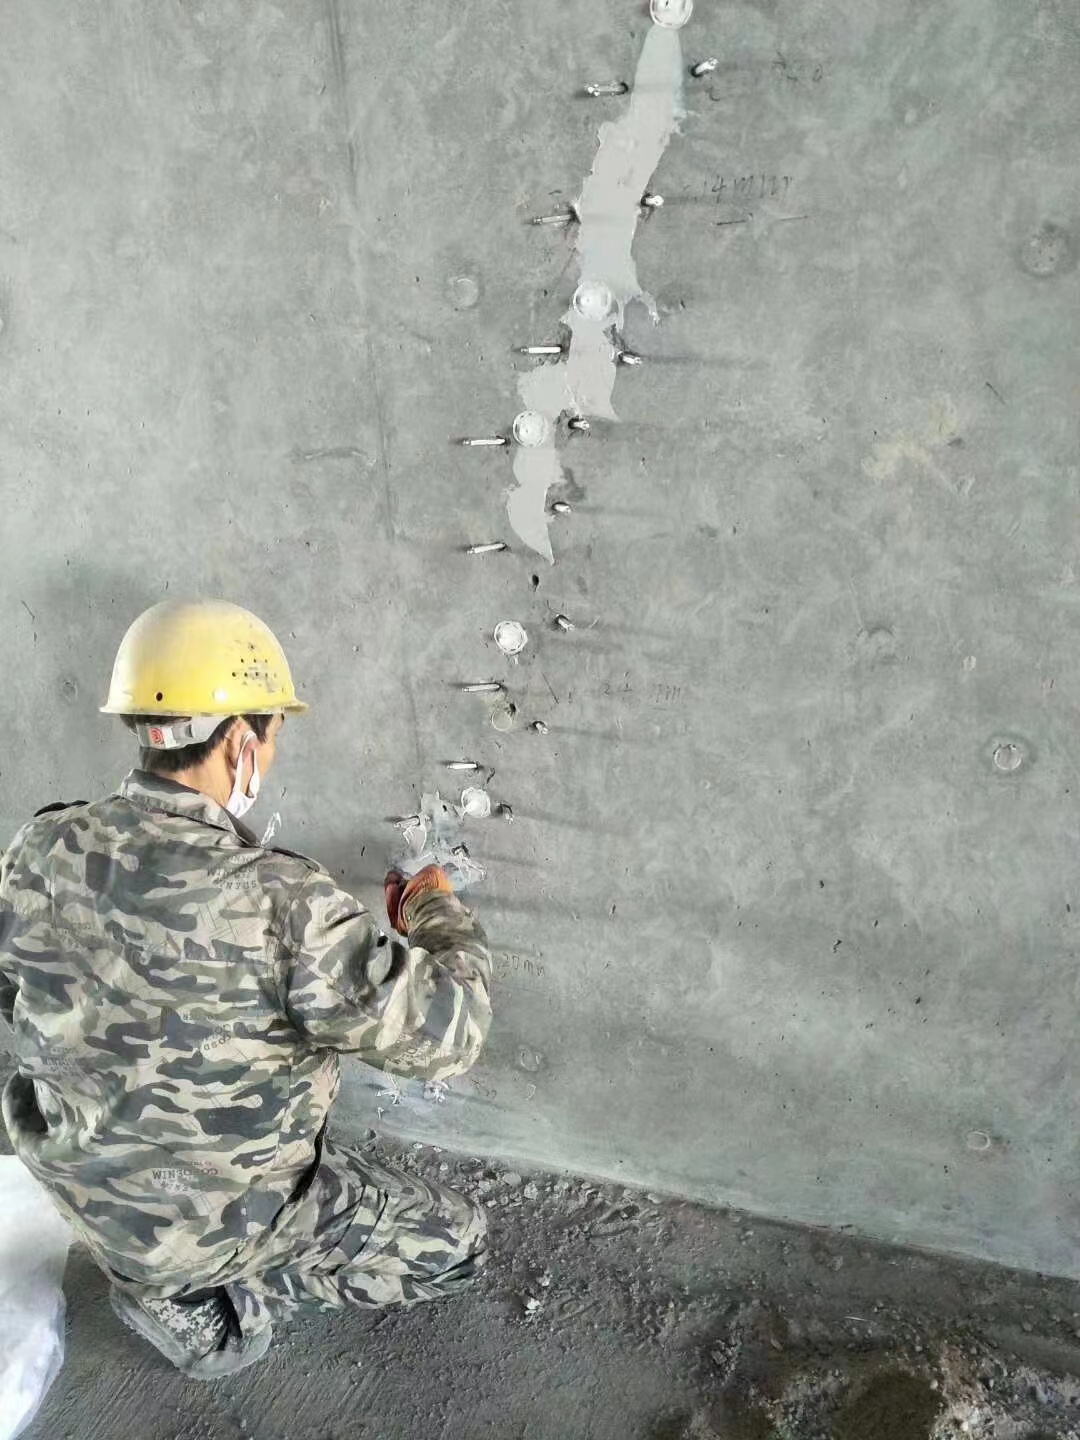 荆州混凝土楼板裂缝加固施工的方案